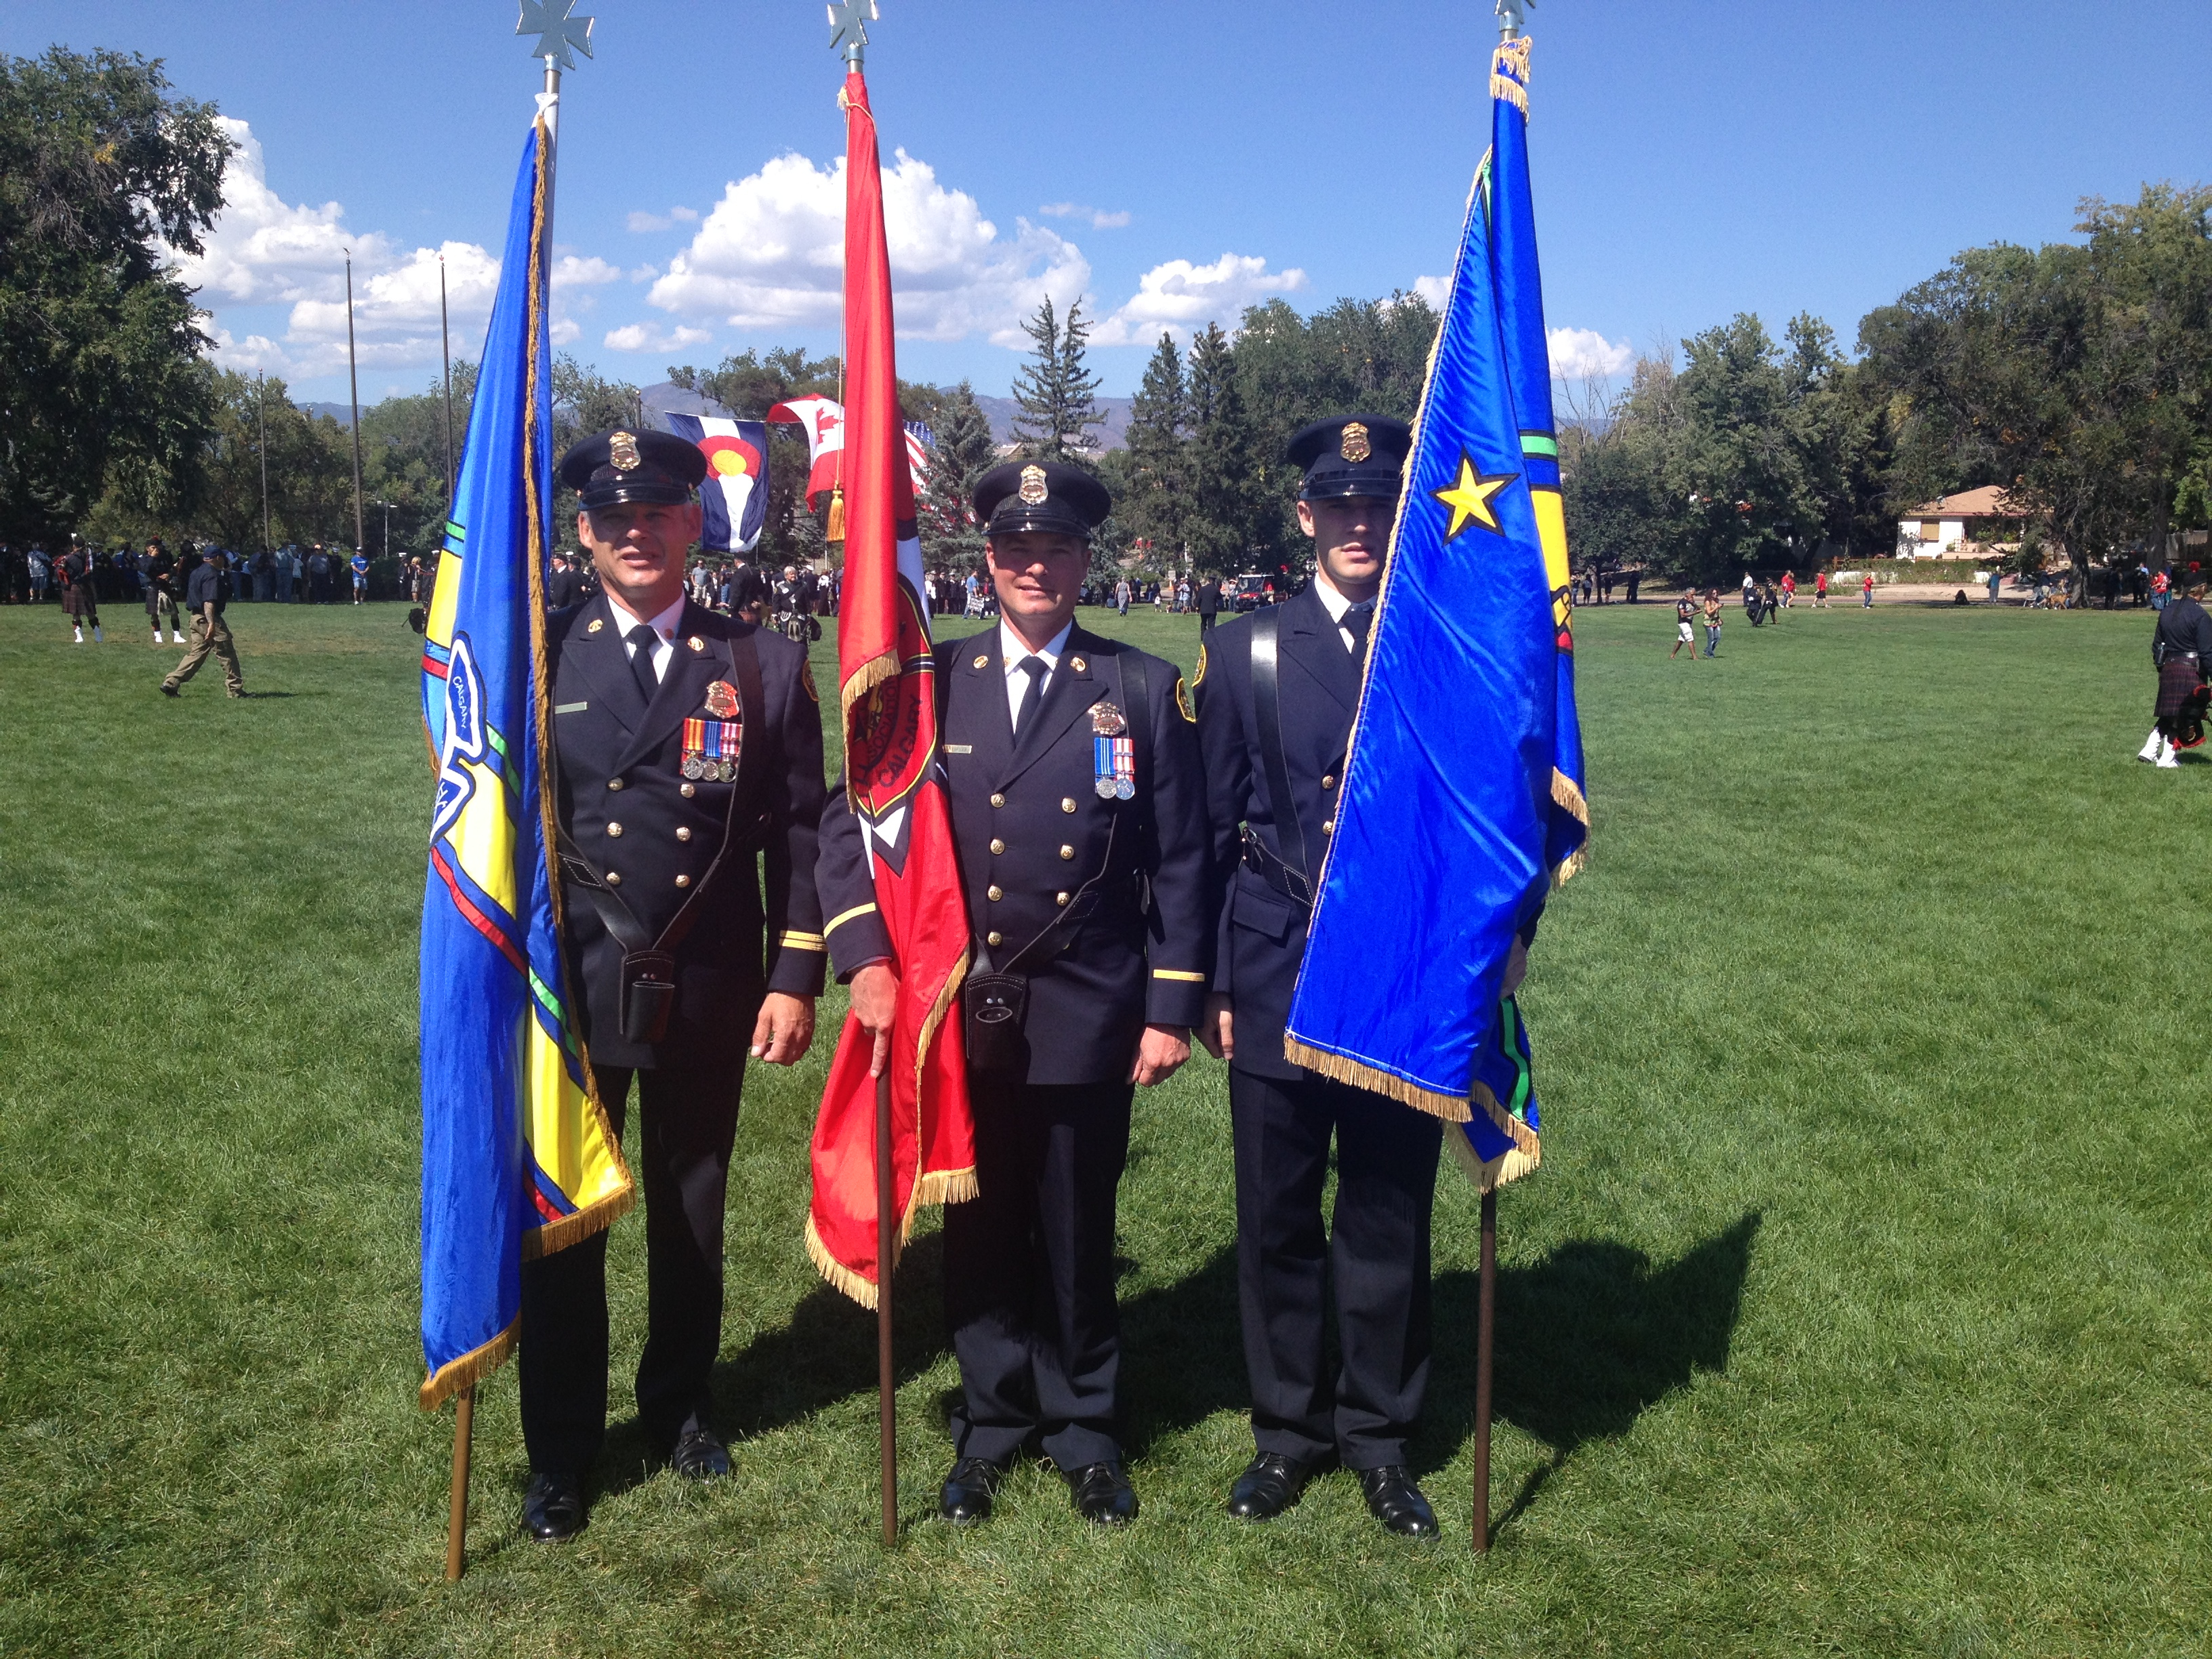 Trois membres de la garde d’honneur en uniforme de grande tenue sur la pelouse, portant tous un drapeau différent